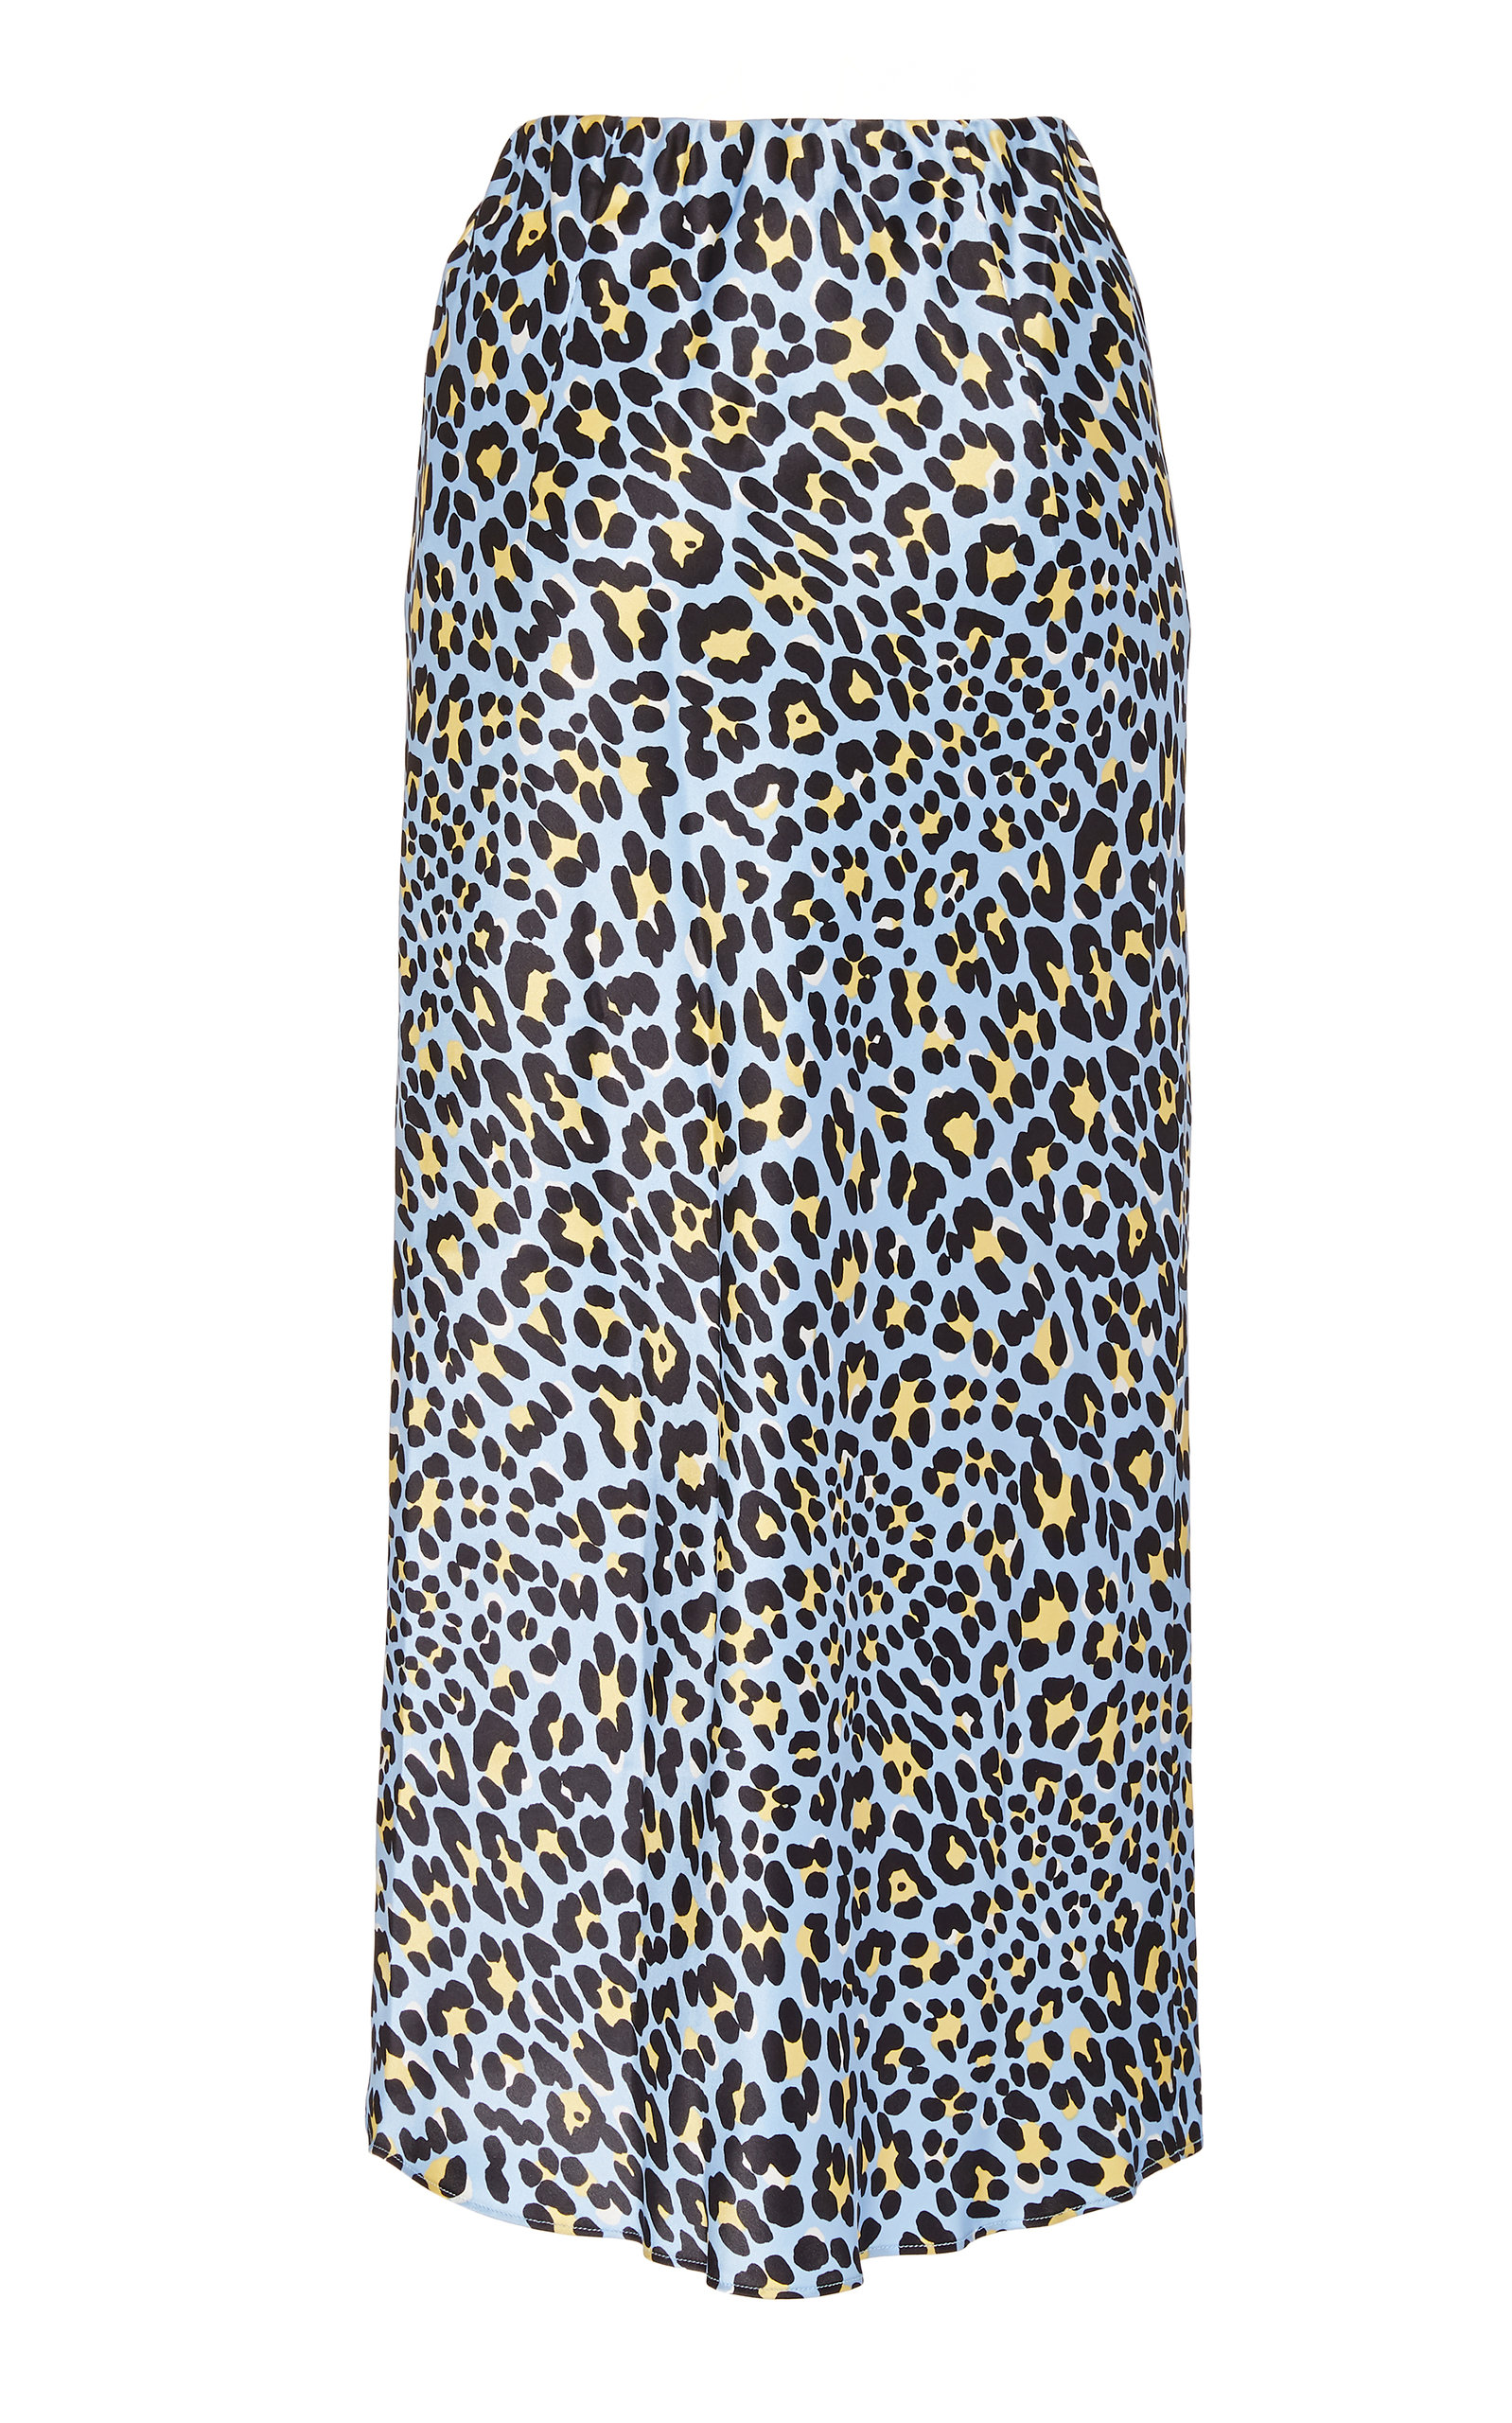 leopard print jersey skirt